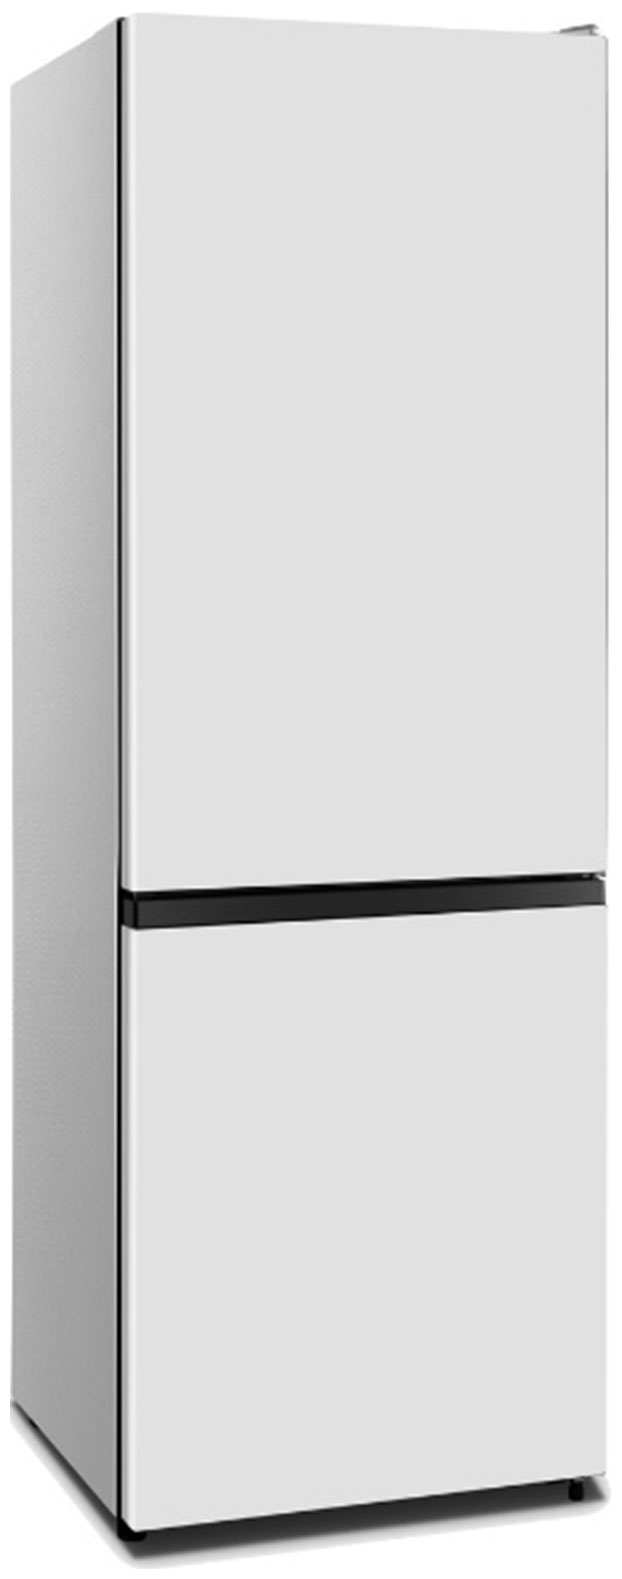 Холодильник HISENSE RB372N4AW1 белый холодильник side by side hisense